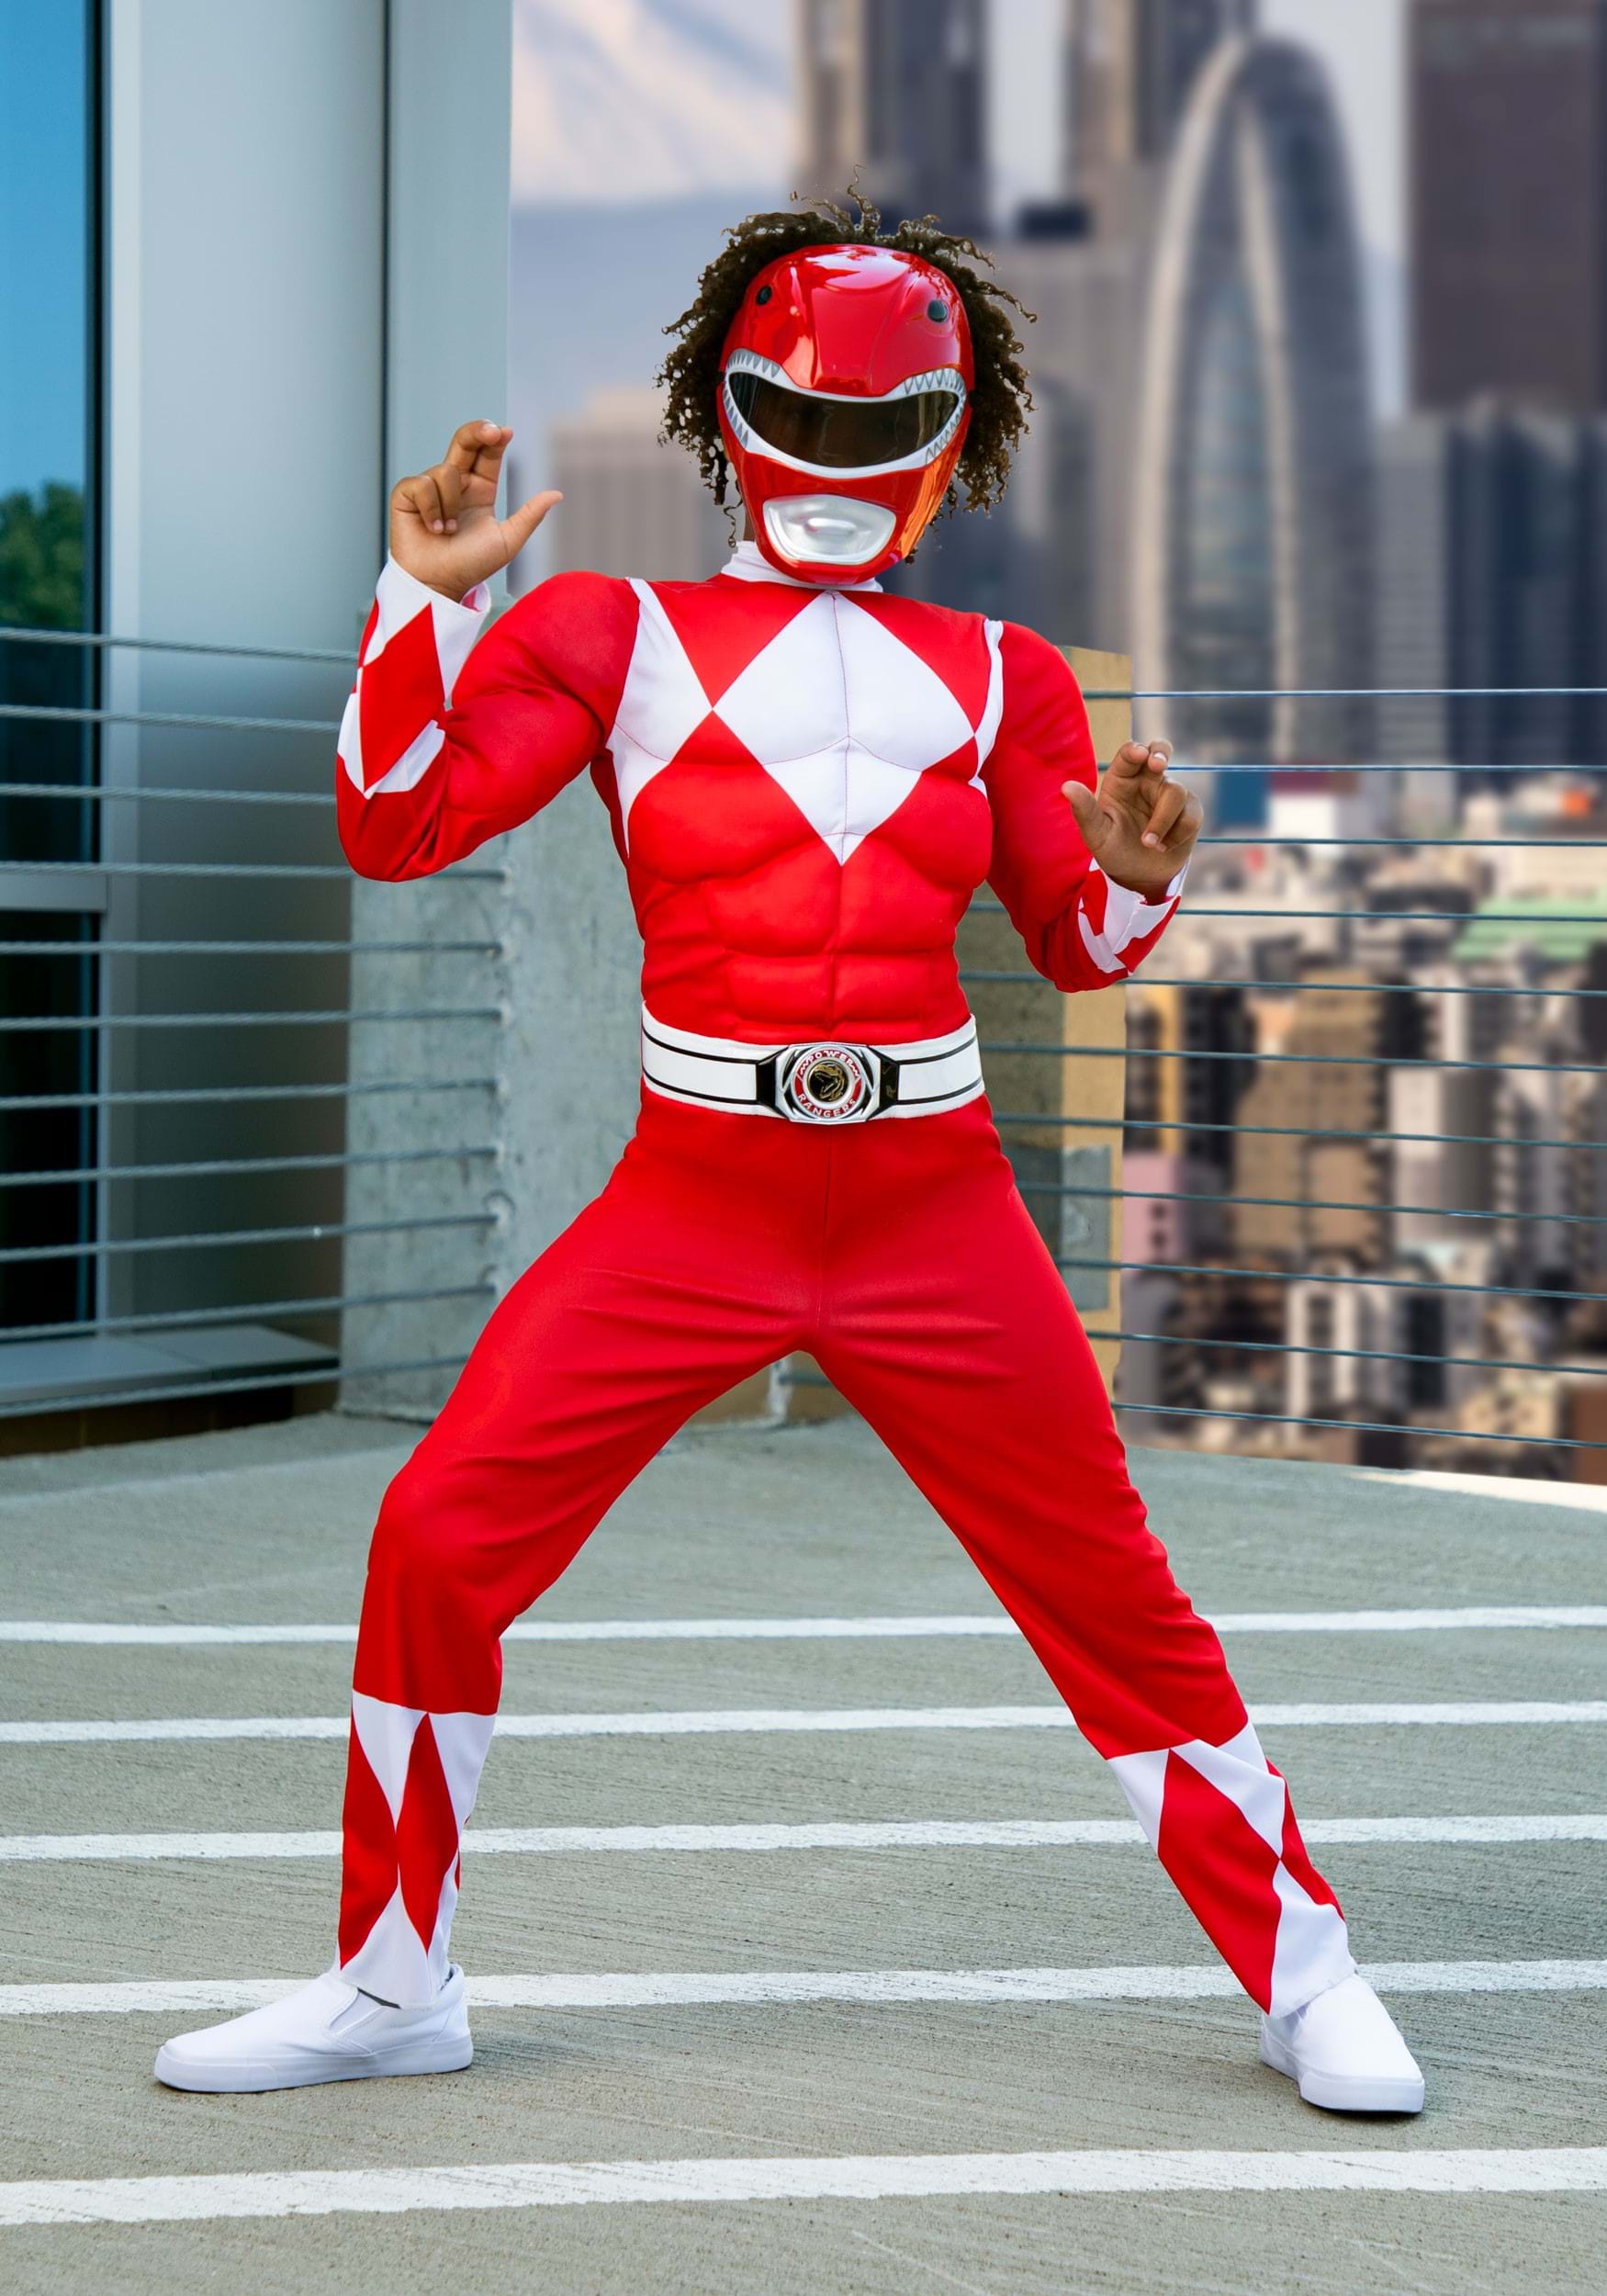 Power Rangers Red Ranger Costume For Boys